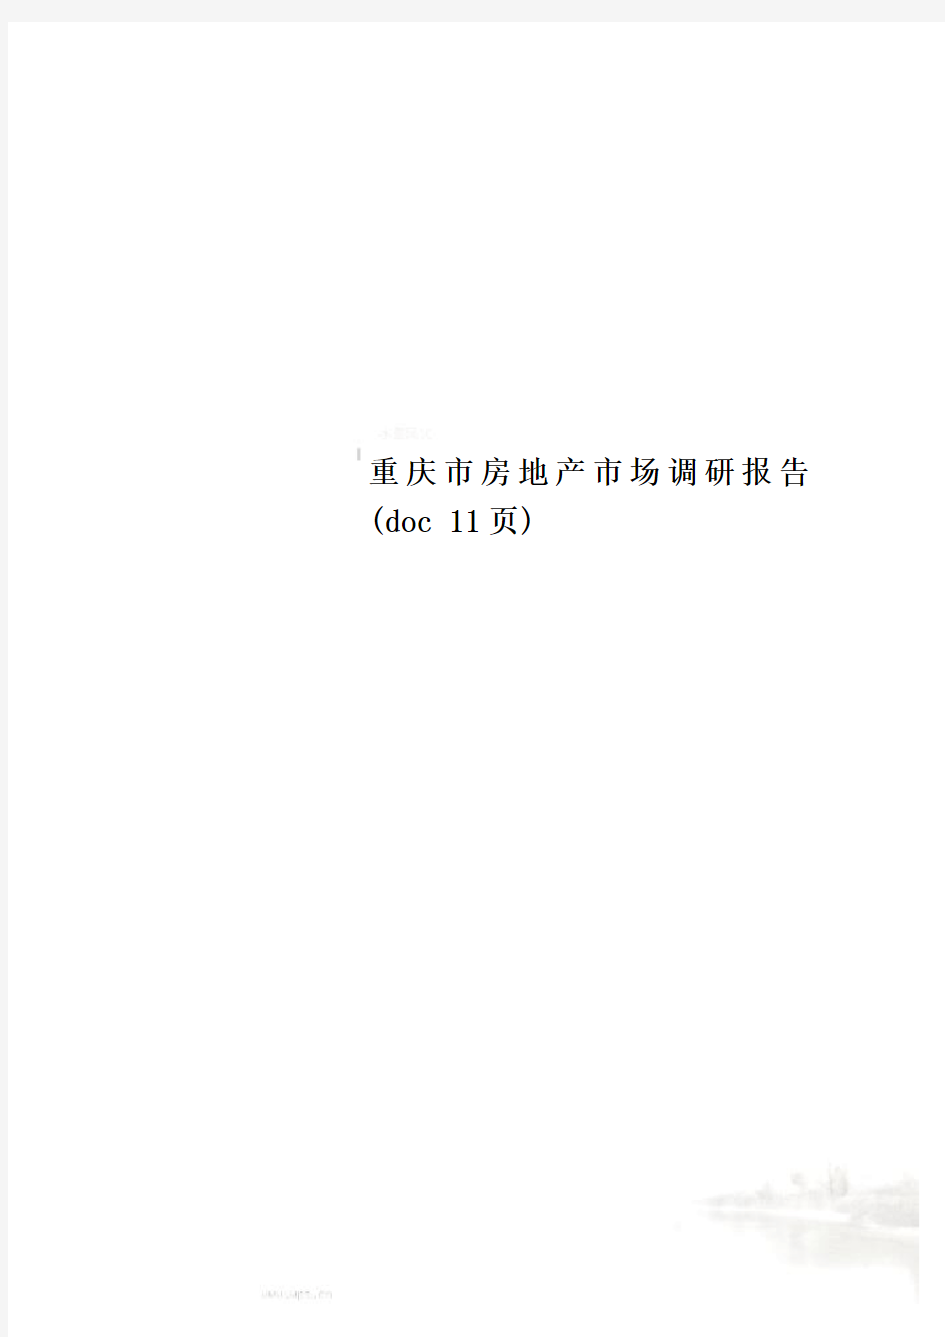 重庆市房地产市场调研报告(doc 11页)